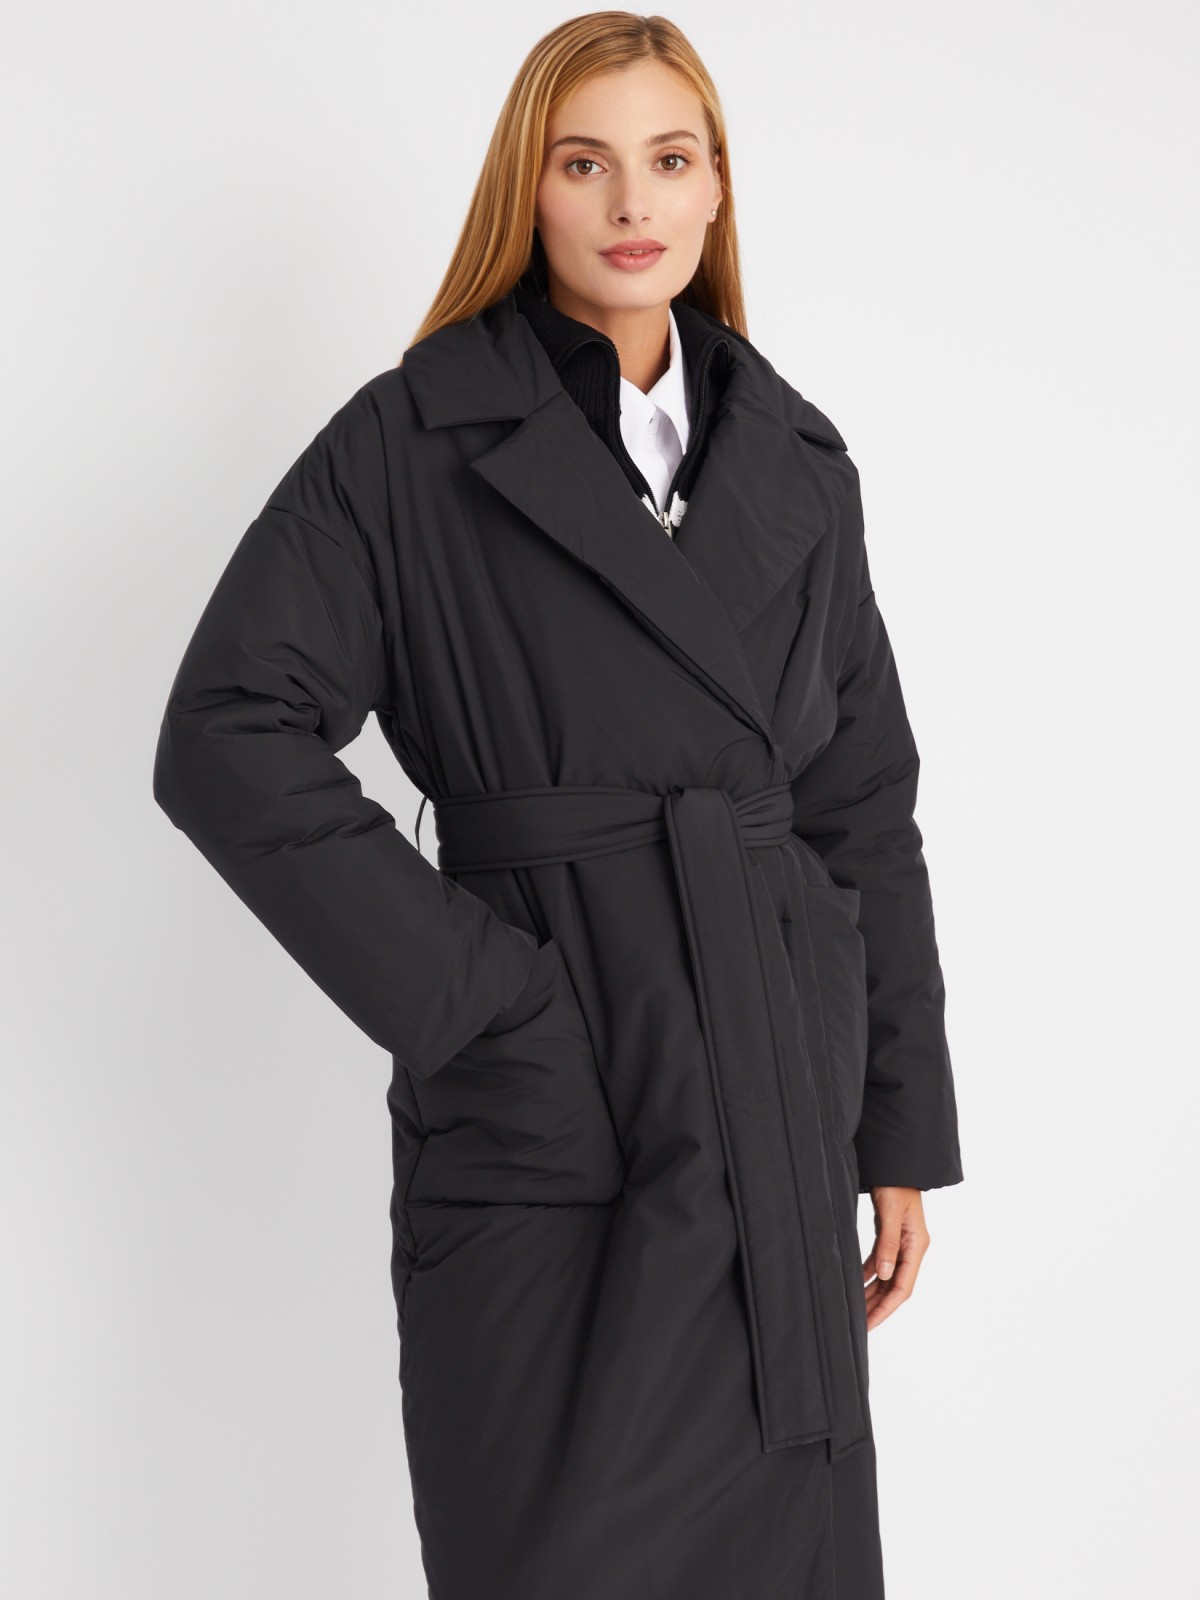 Тёплое пальто оверсайз силуэта на синтепоне с отложным воротником и поясом